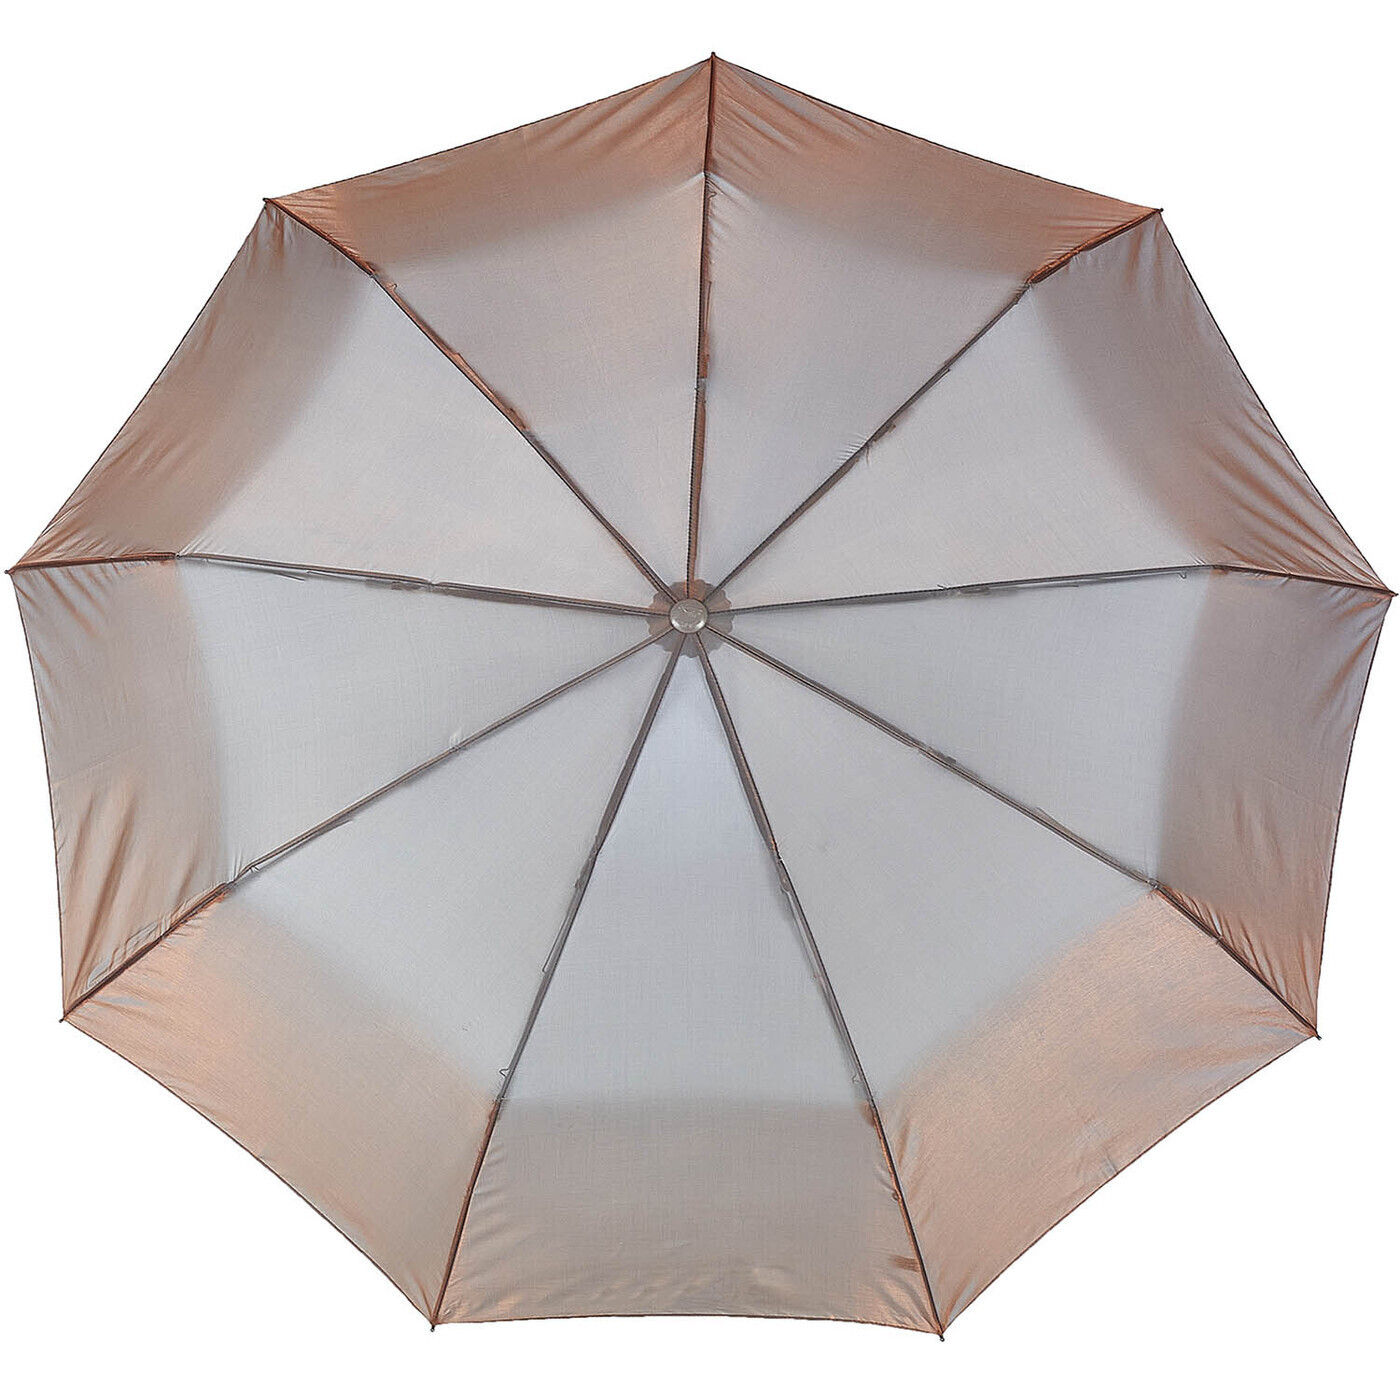 Купить зонт на озон. Зонт Долфин. Зонт Долфин 904. Зонт Dolphin Umbrella. Dolphin Classic зонт автоматический.